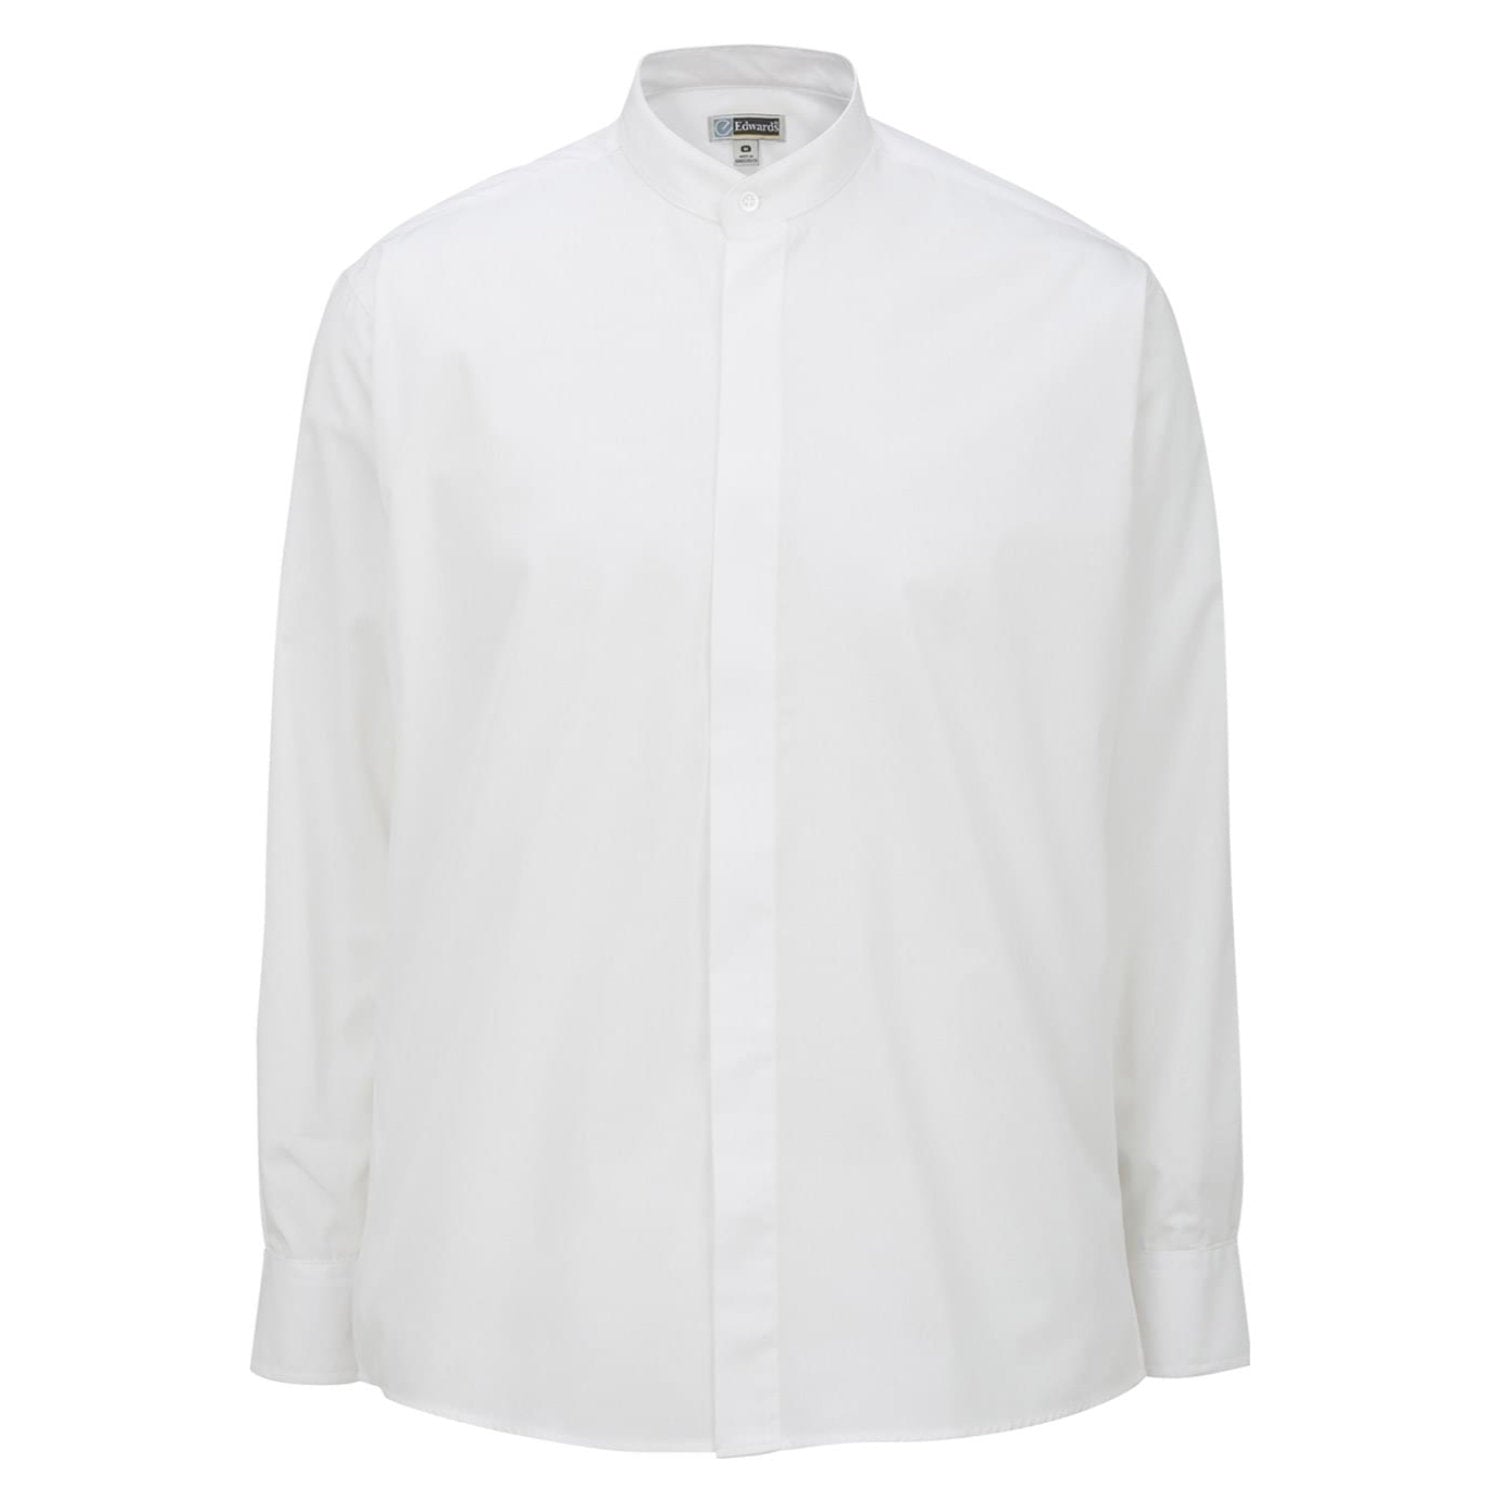 Banded Collar Broadcloth Shirt